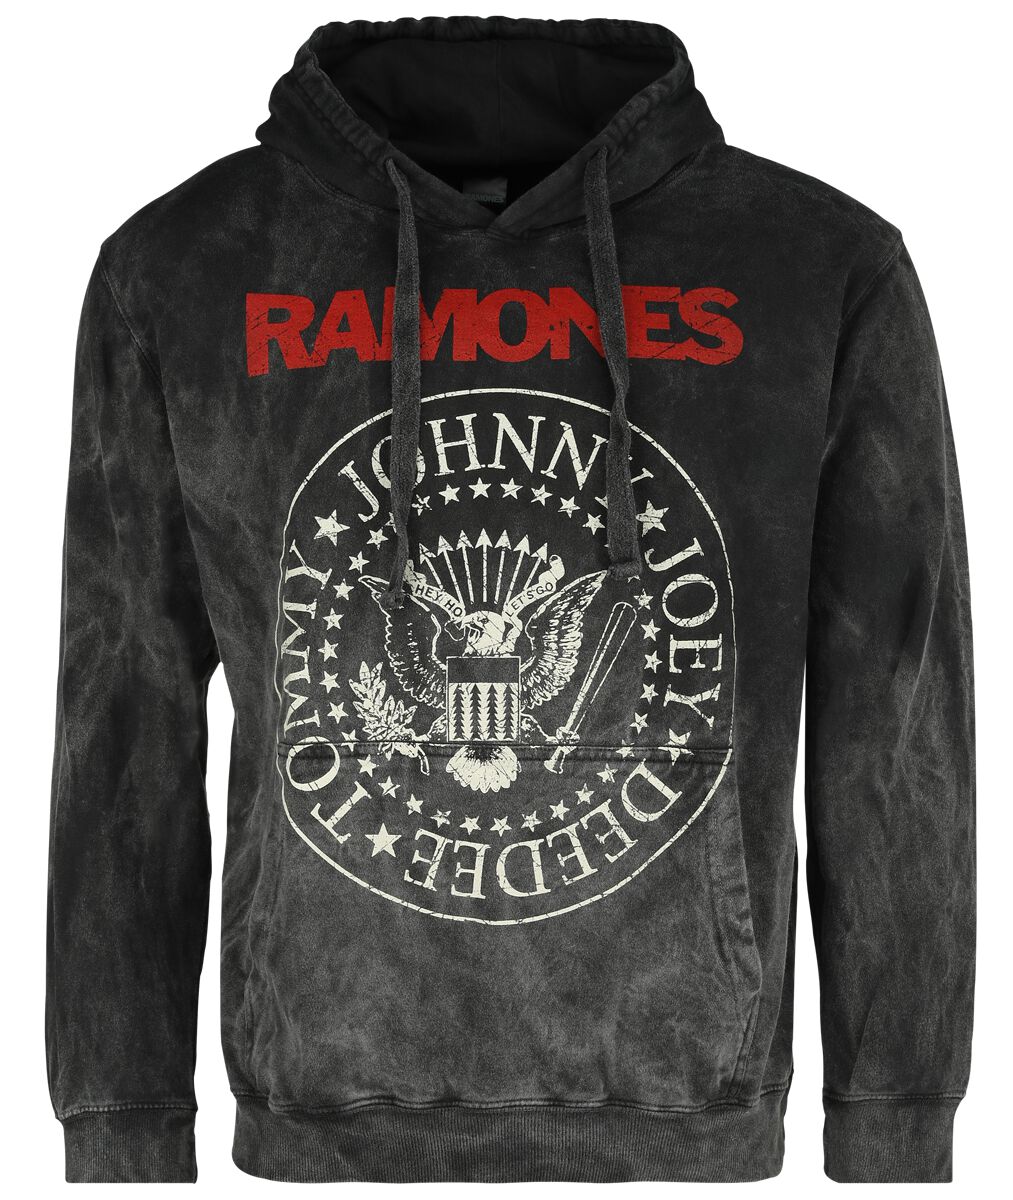 Image of Felpa con cappuccio di Ramones - Crest - S a XXL - Uomo - grigio scuro